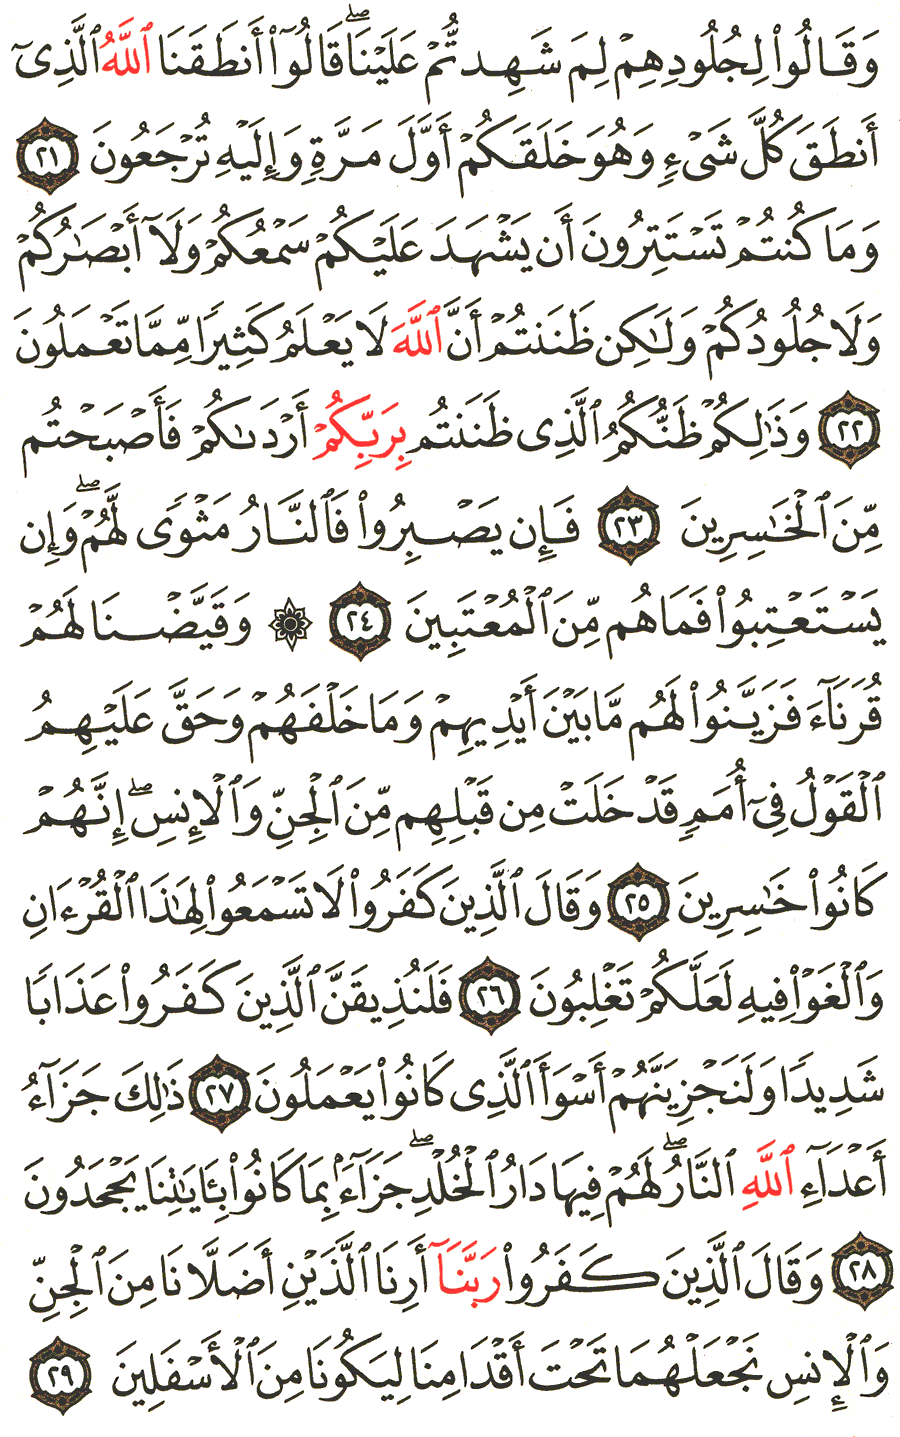 الصفحة 479 من القرآن الكريم